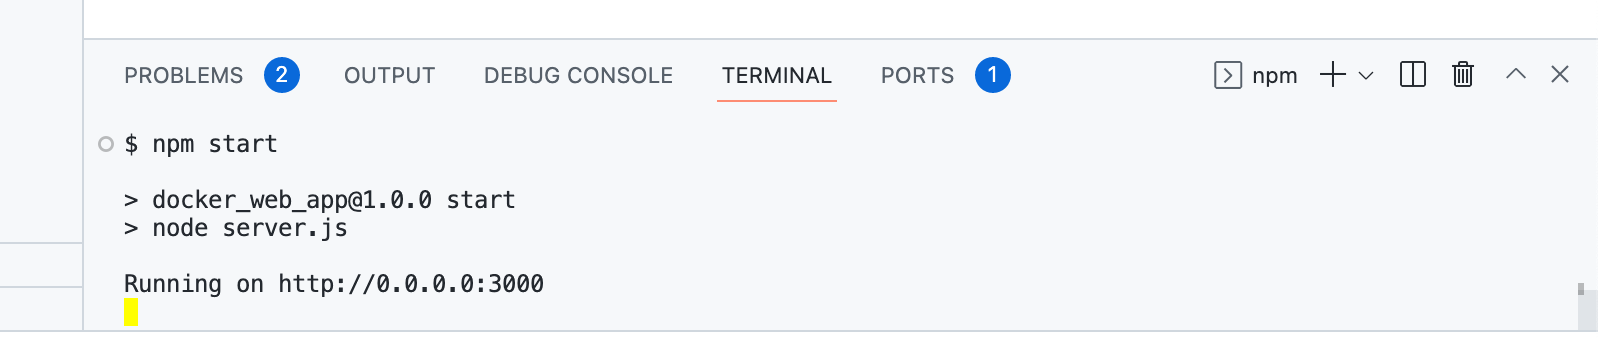 ターミナルで "npm start" を実行しているスクリーンショット。 最後の出力には "http://0.0.0.0:3000 上で実行中" と表示されています。